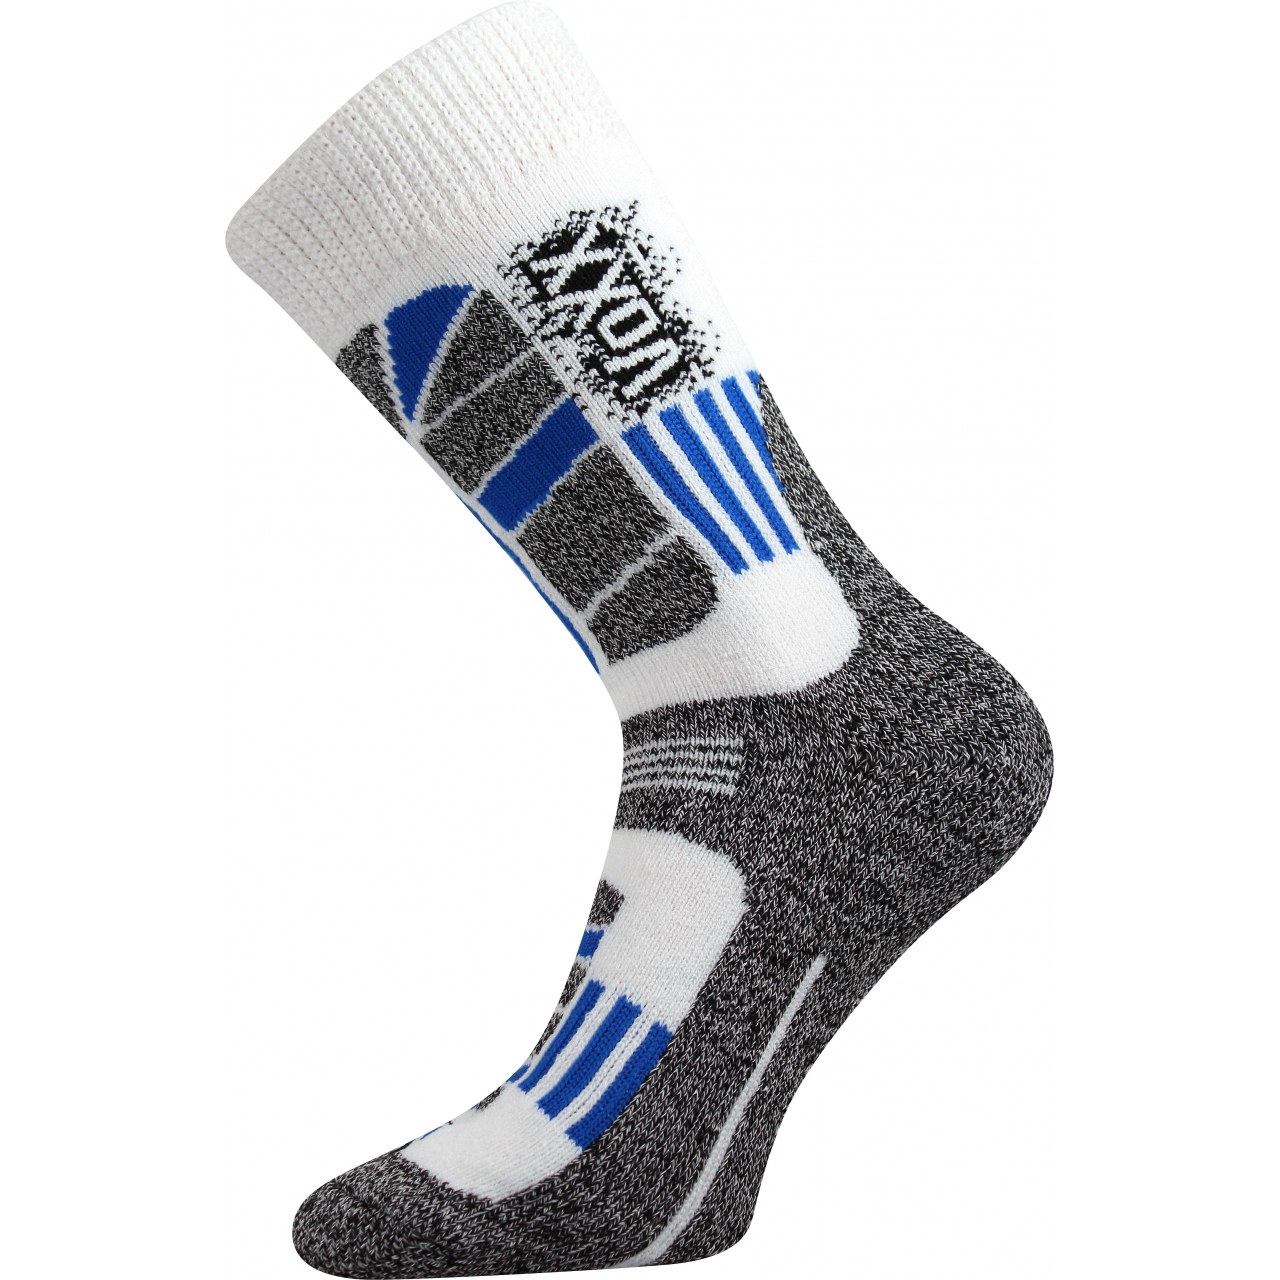 Ponožky unisex termo Voxx Traction I - bílé-šedé, 43-46